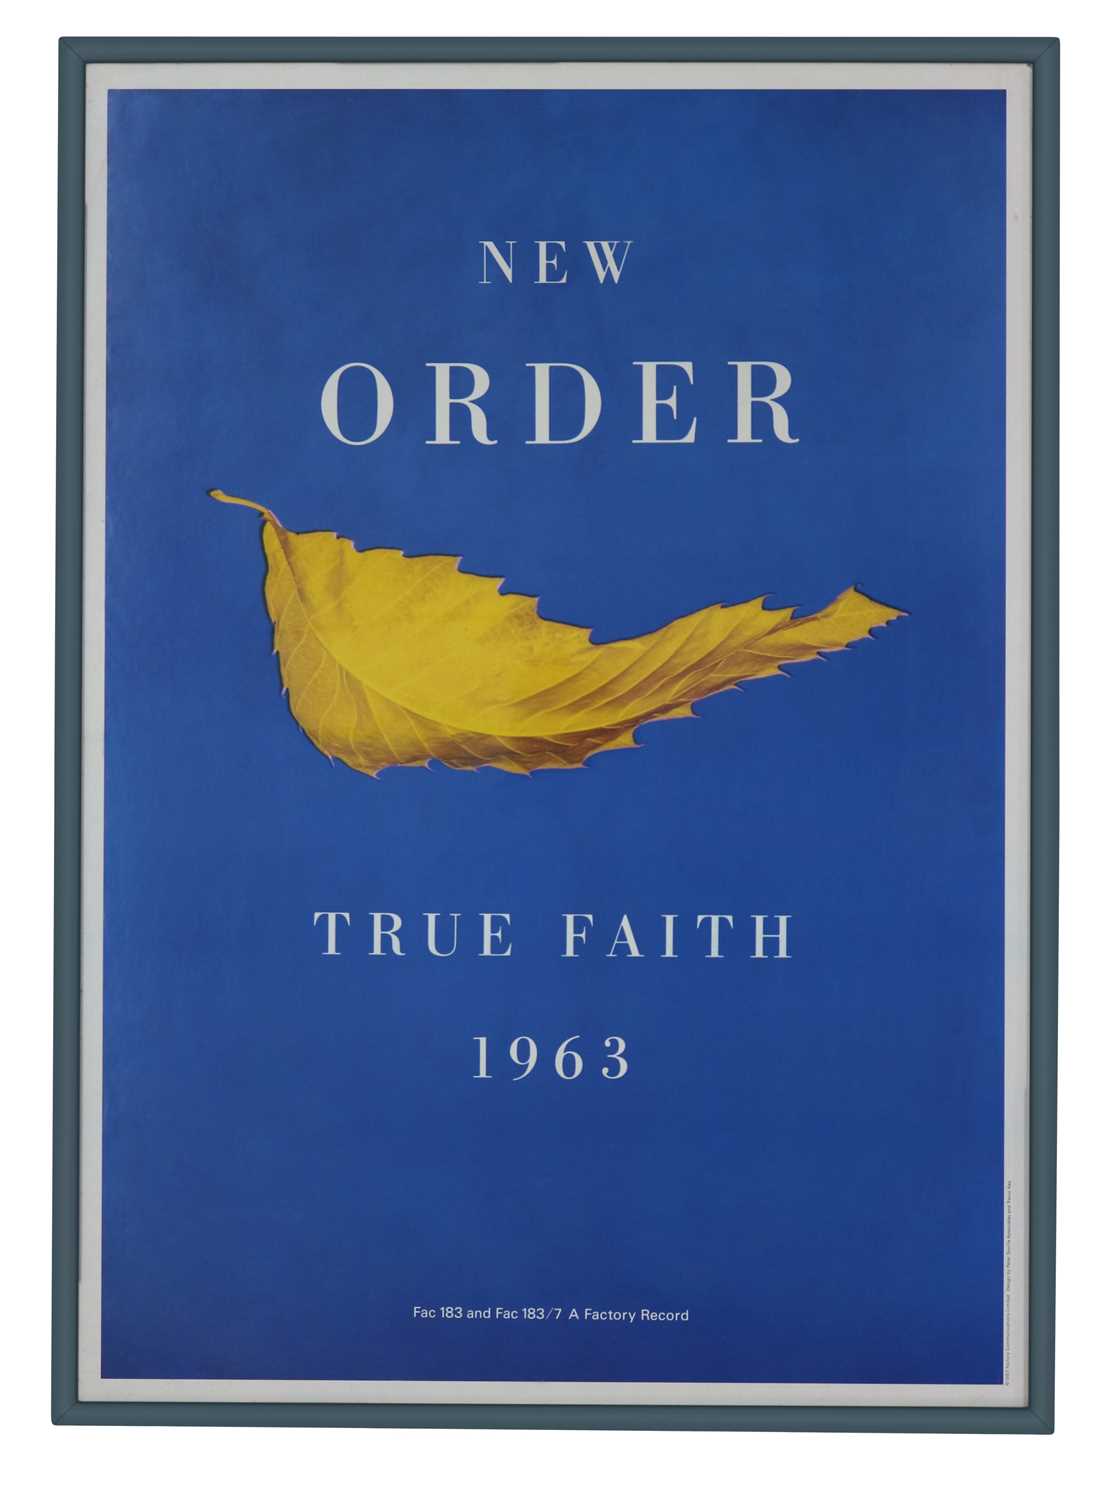 Lot 57 - NEW ORDER TRUE FAITH 1963 ORIGINAL PROMO